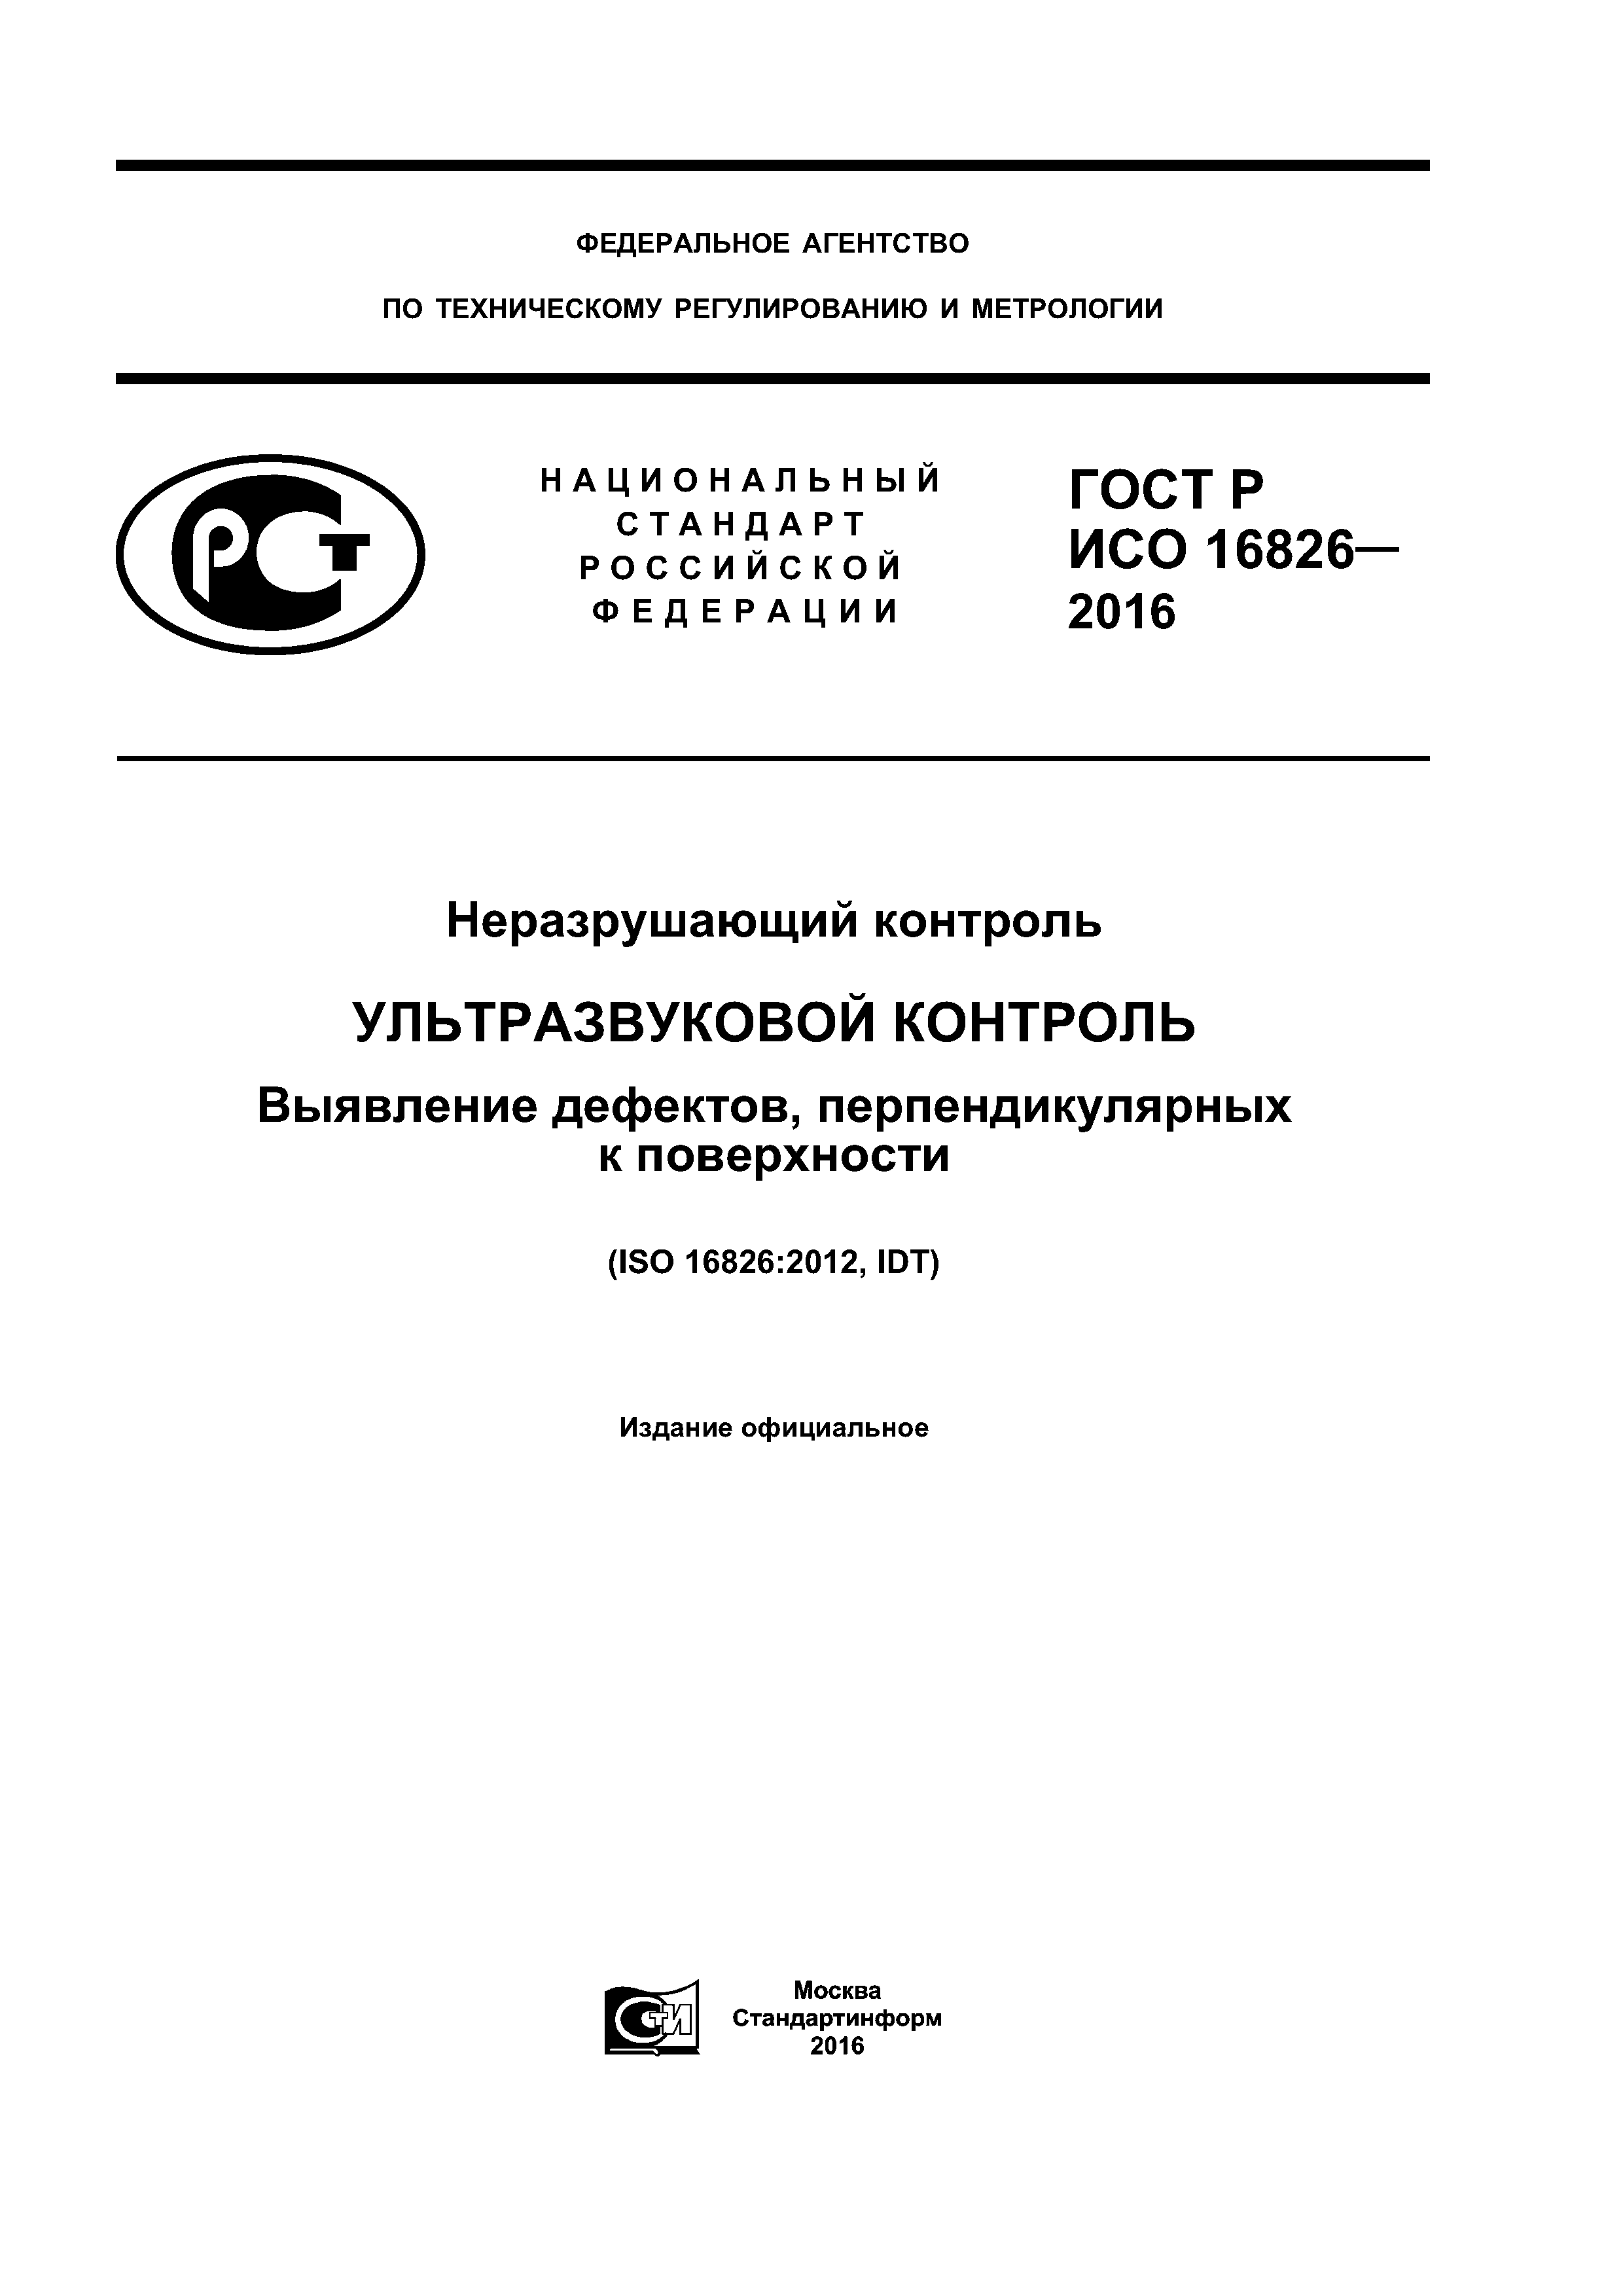 ГОСТ Р ИСО 16826-2016